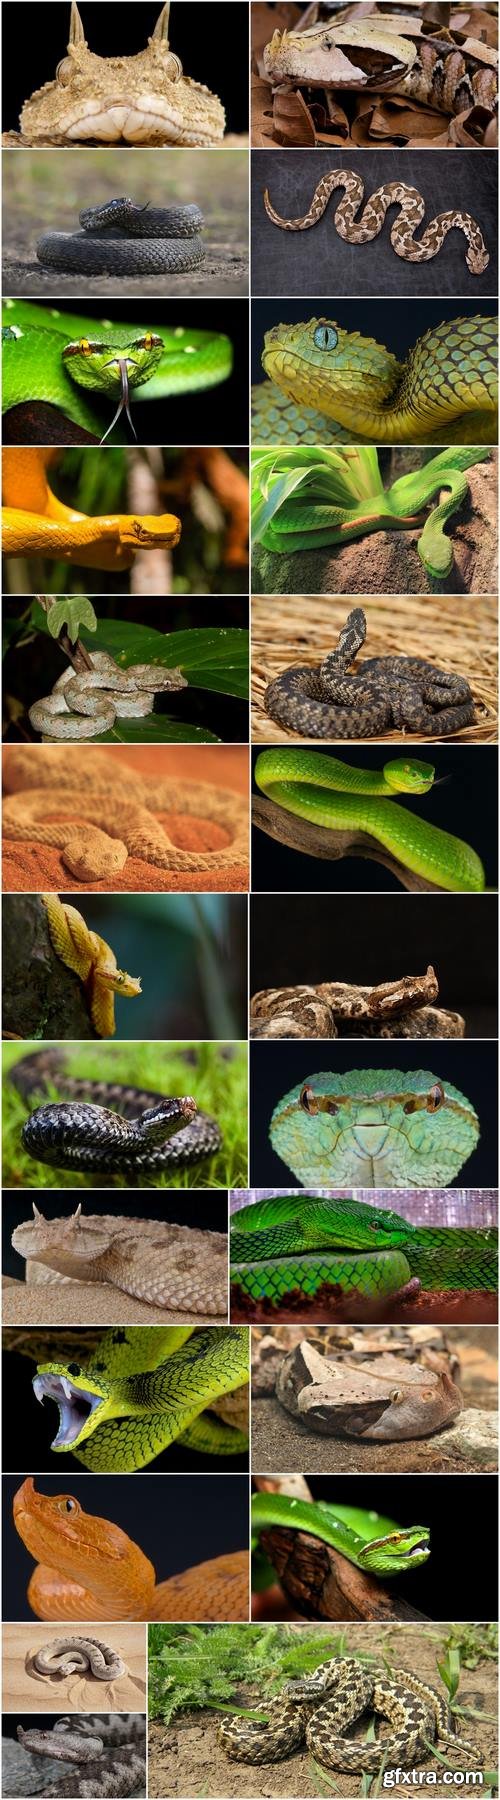 Viper snake reptile 25 HQ Jpeg